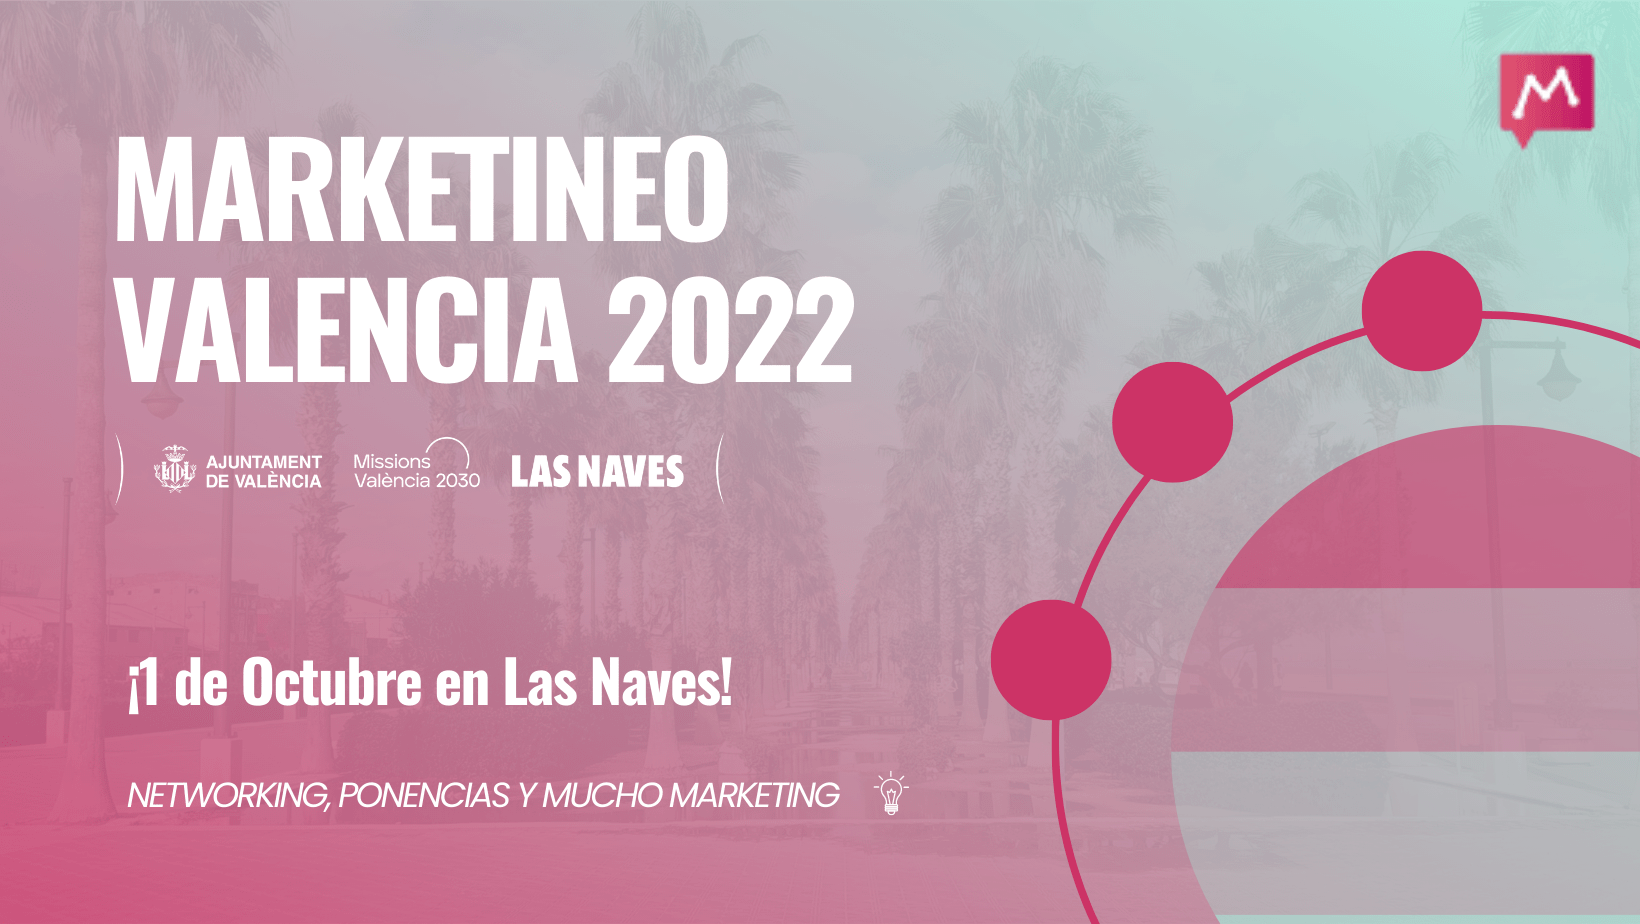 Cartel anunciador de Marketineo Valencia 2022